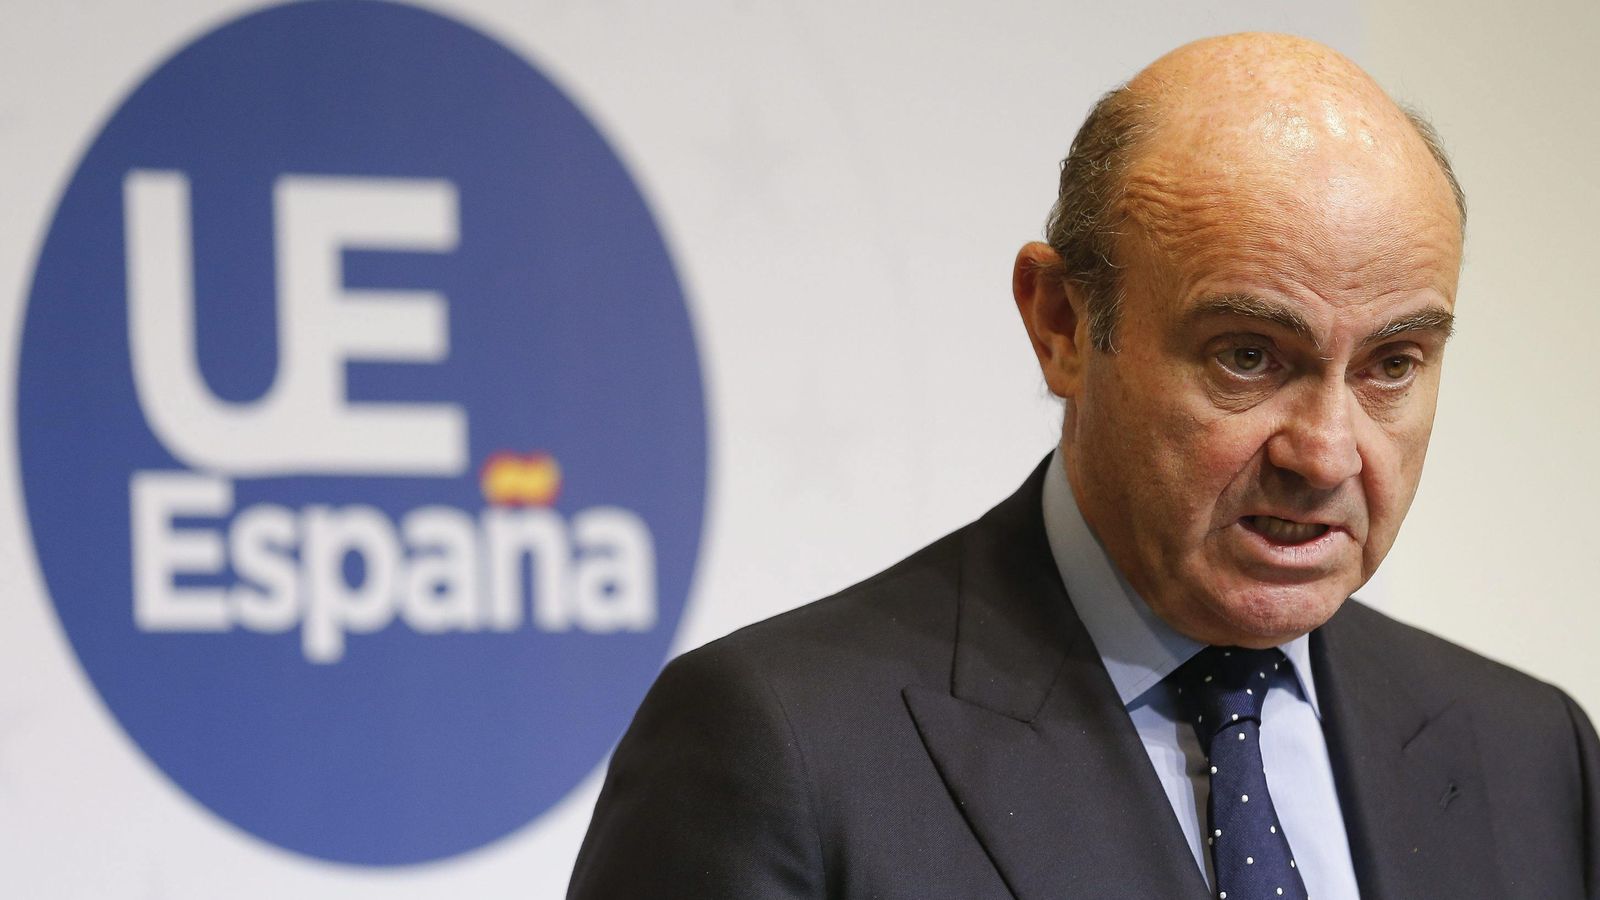 Foto: El ministro español de Economía y Competitividad, Luis de Guindos, comparece en rueda de prensa durante la reunión de los ministros de Economía y Finanzas de la Unión Europea (UE). (EFE)